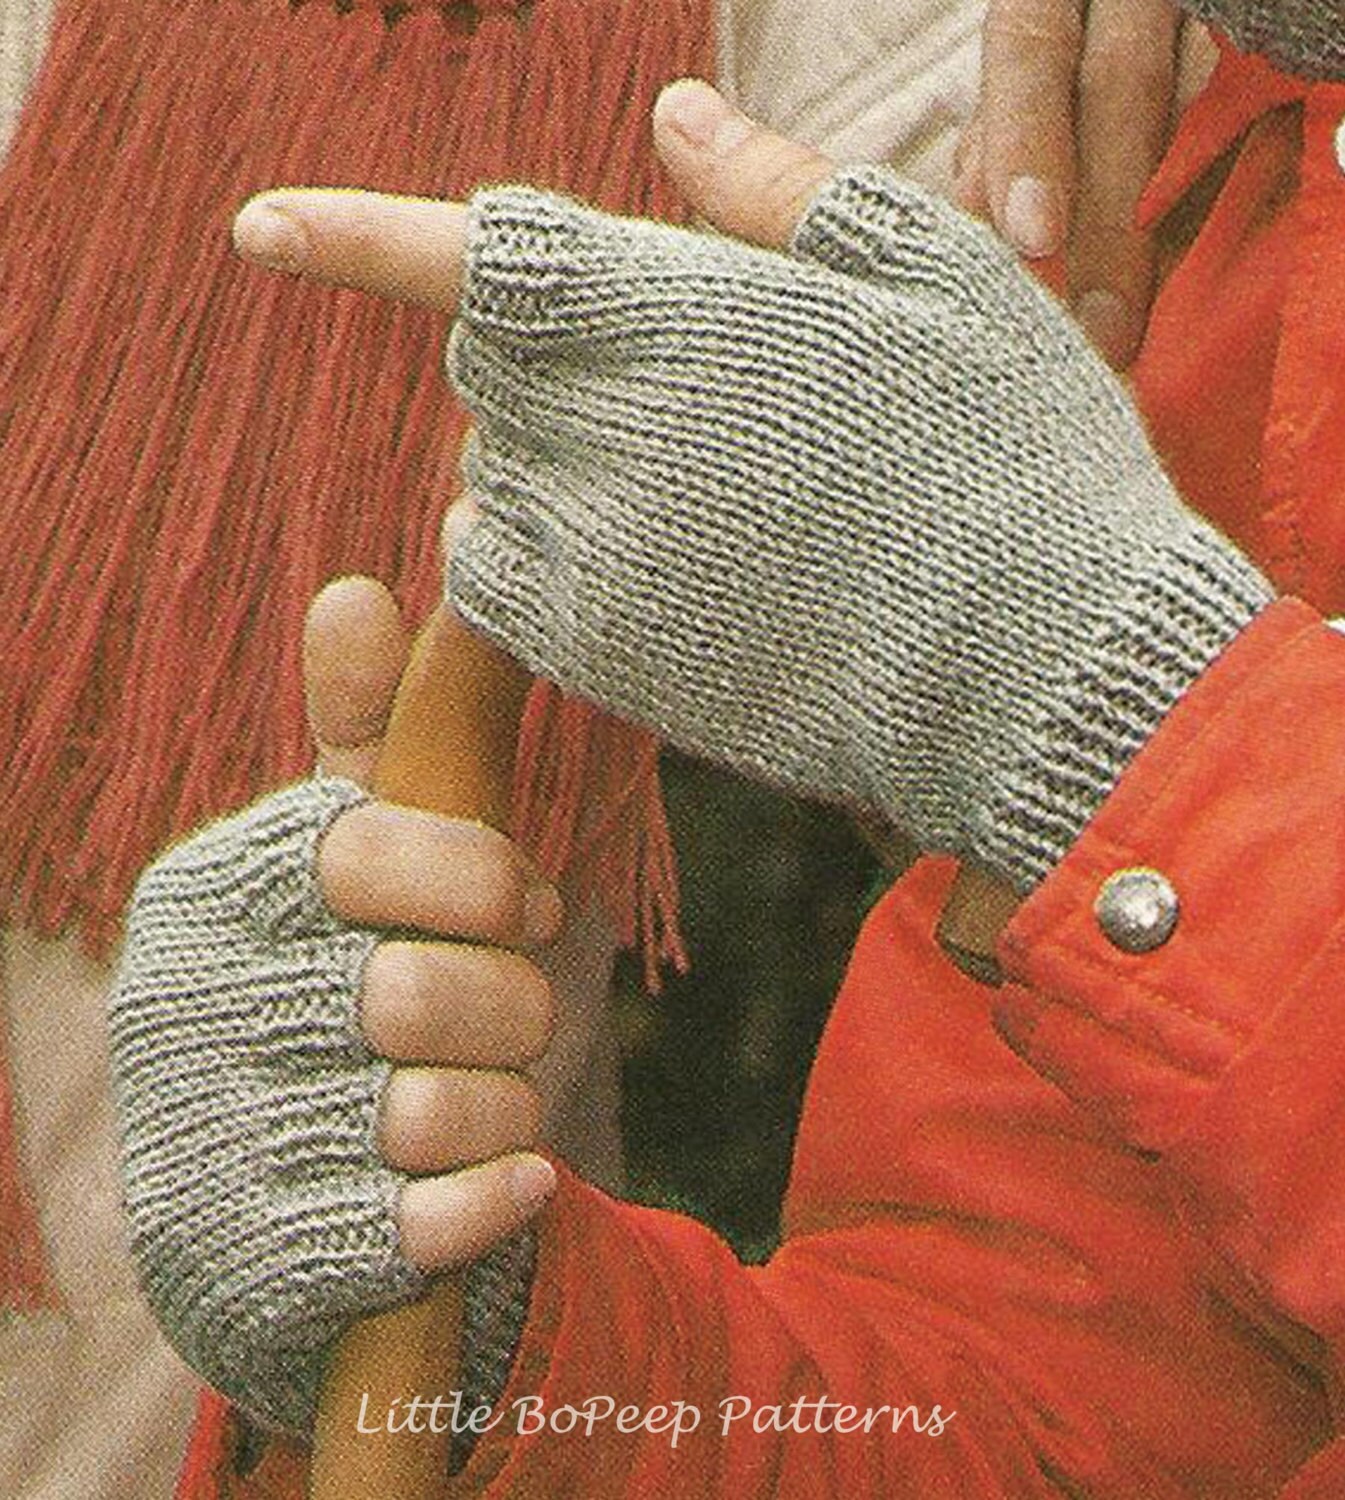 Men's Fingerless Mitts Knitting Pattern PDF